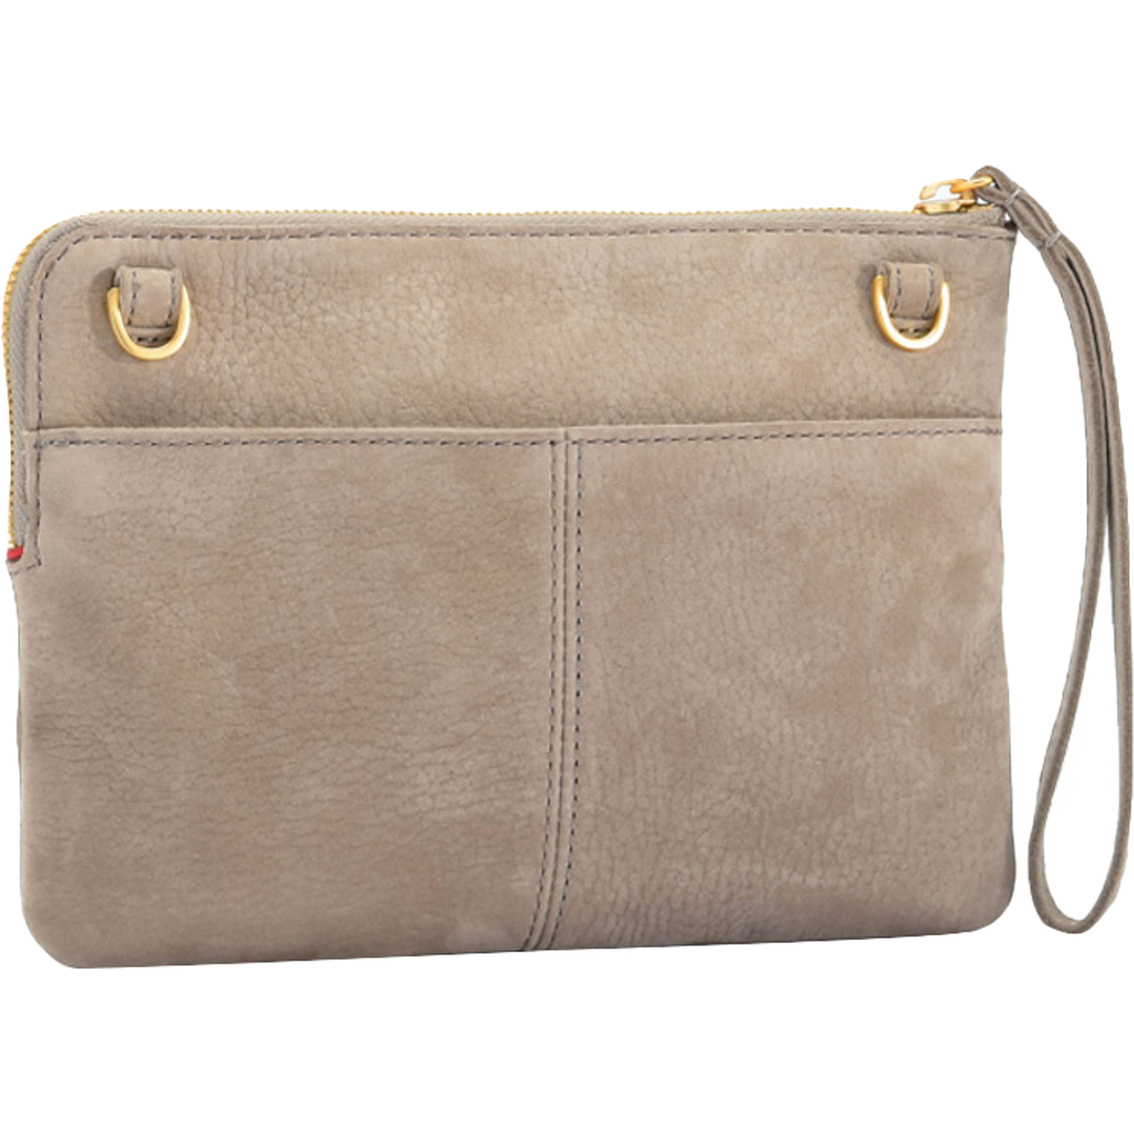 Hammitt Nash Small Handbag - Image 3 of 5